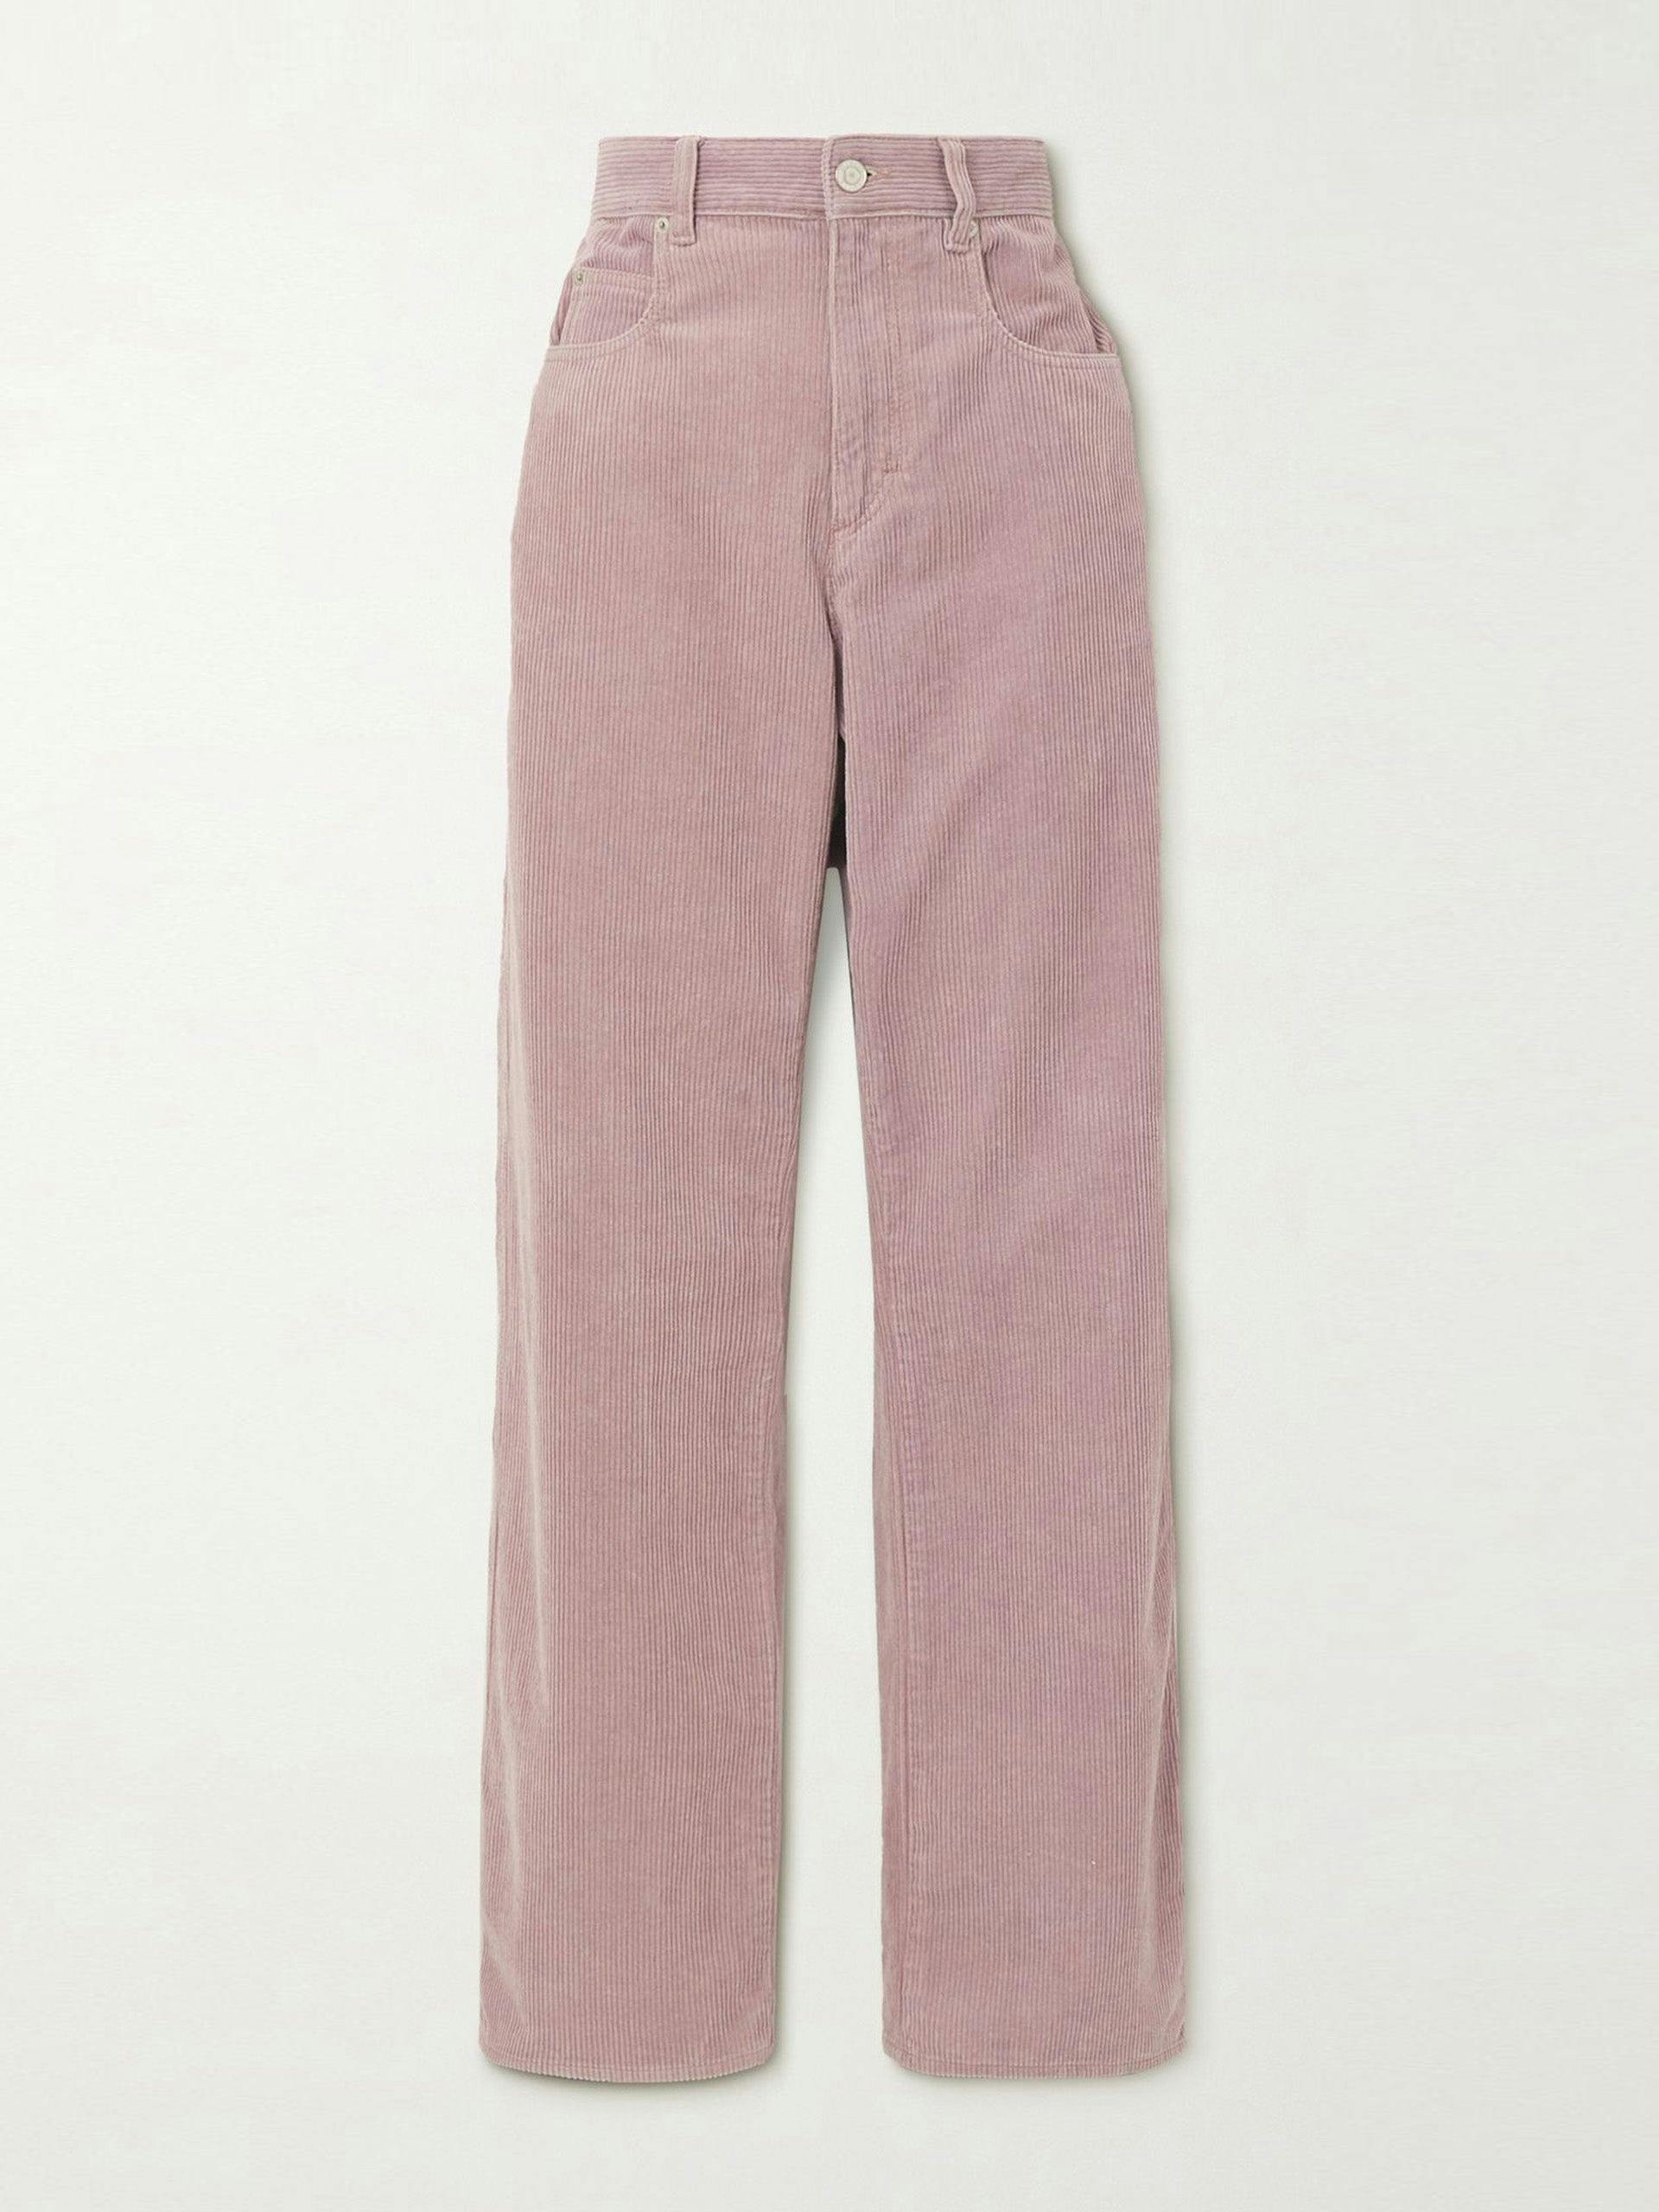 Lilac cotton and linen-blend corduroy pants